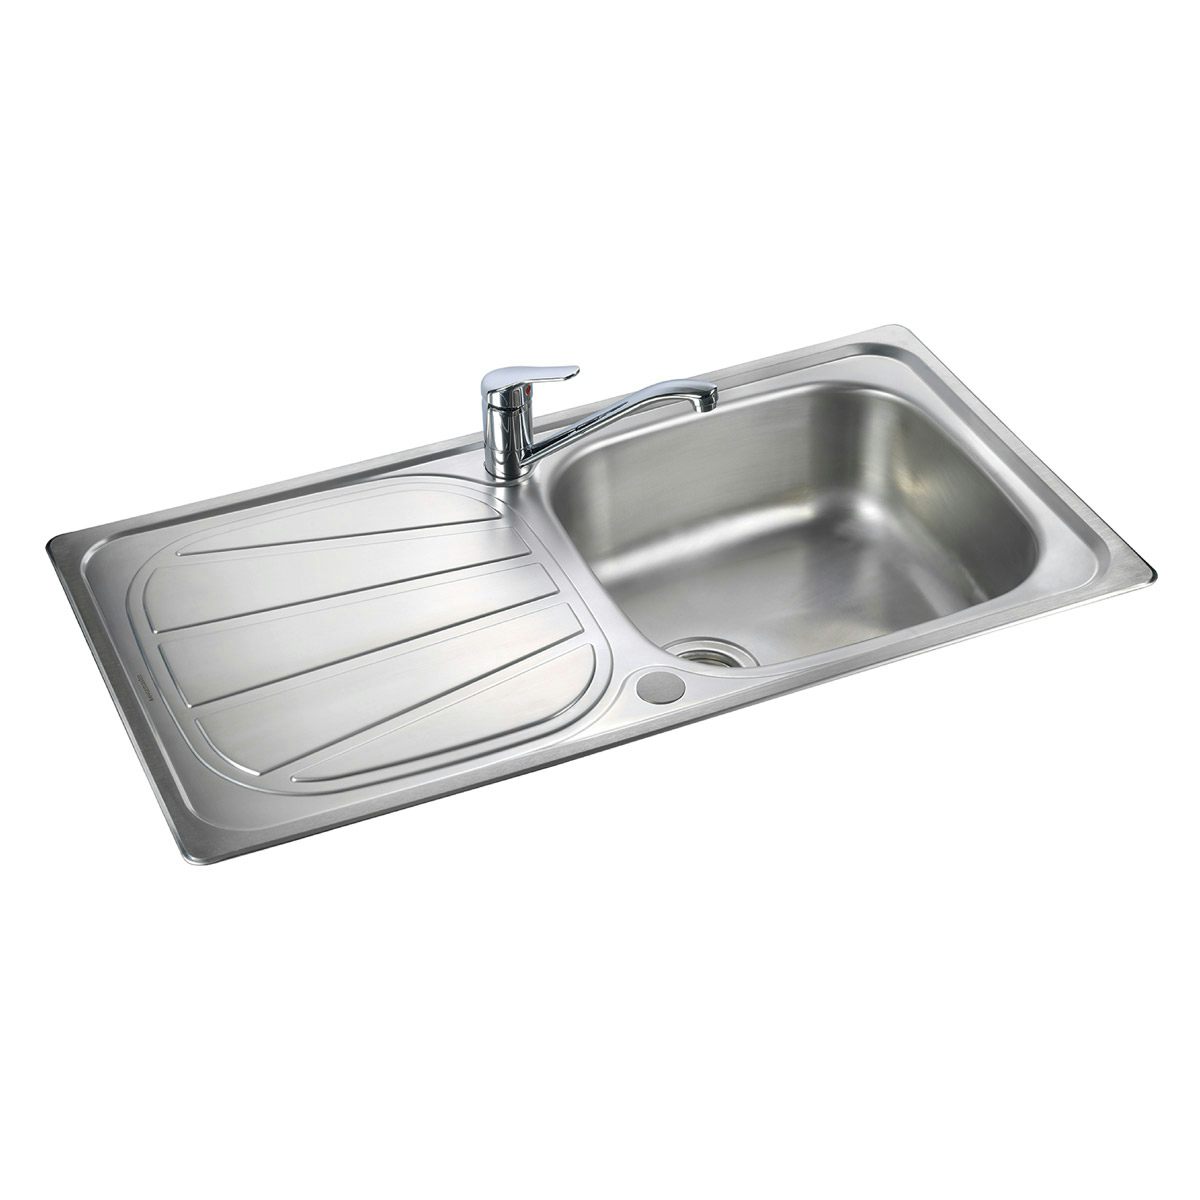 Rangemaster Baltimore 1.0 bowl reversible kitchen sink with waste kit